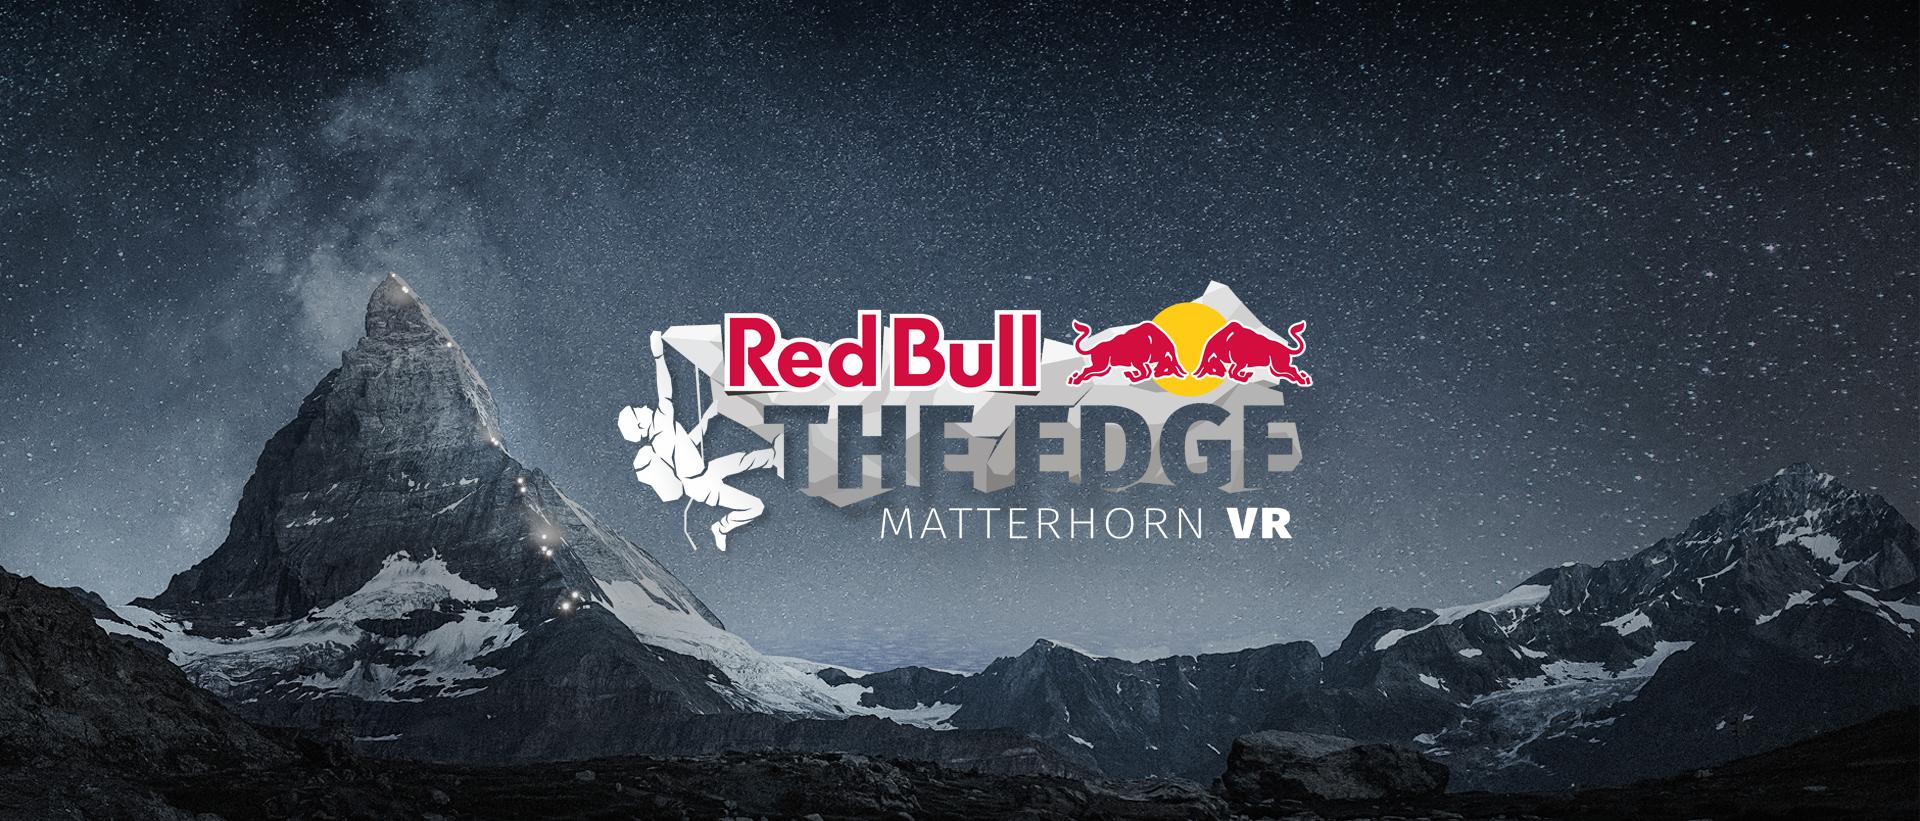 matterhorn virtual tour